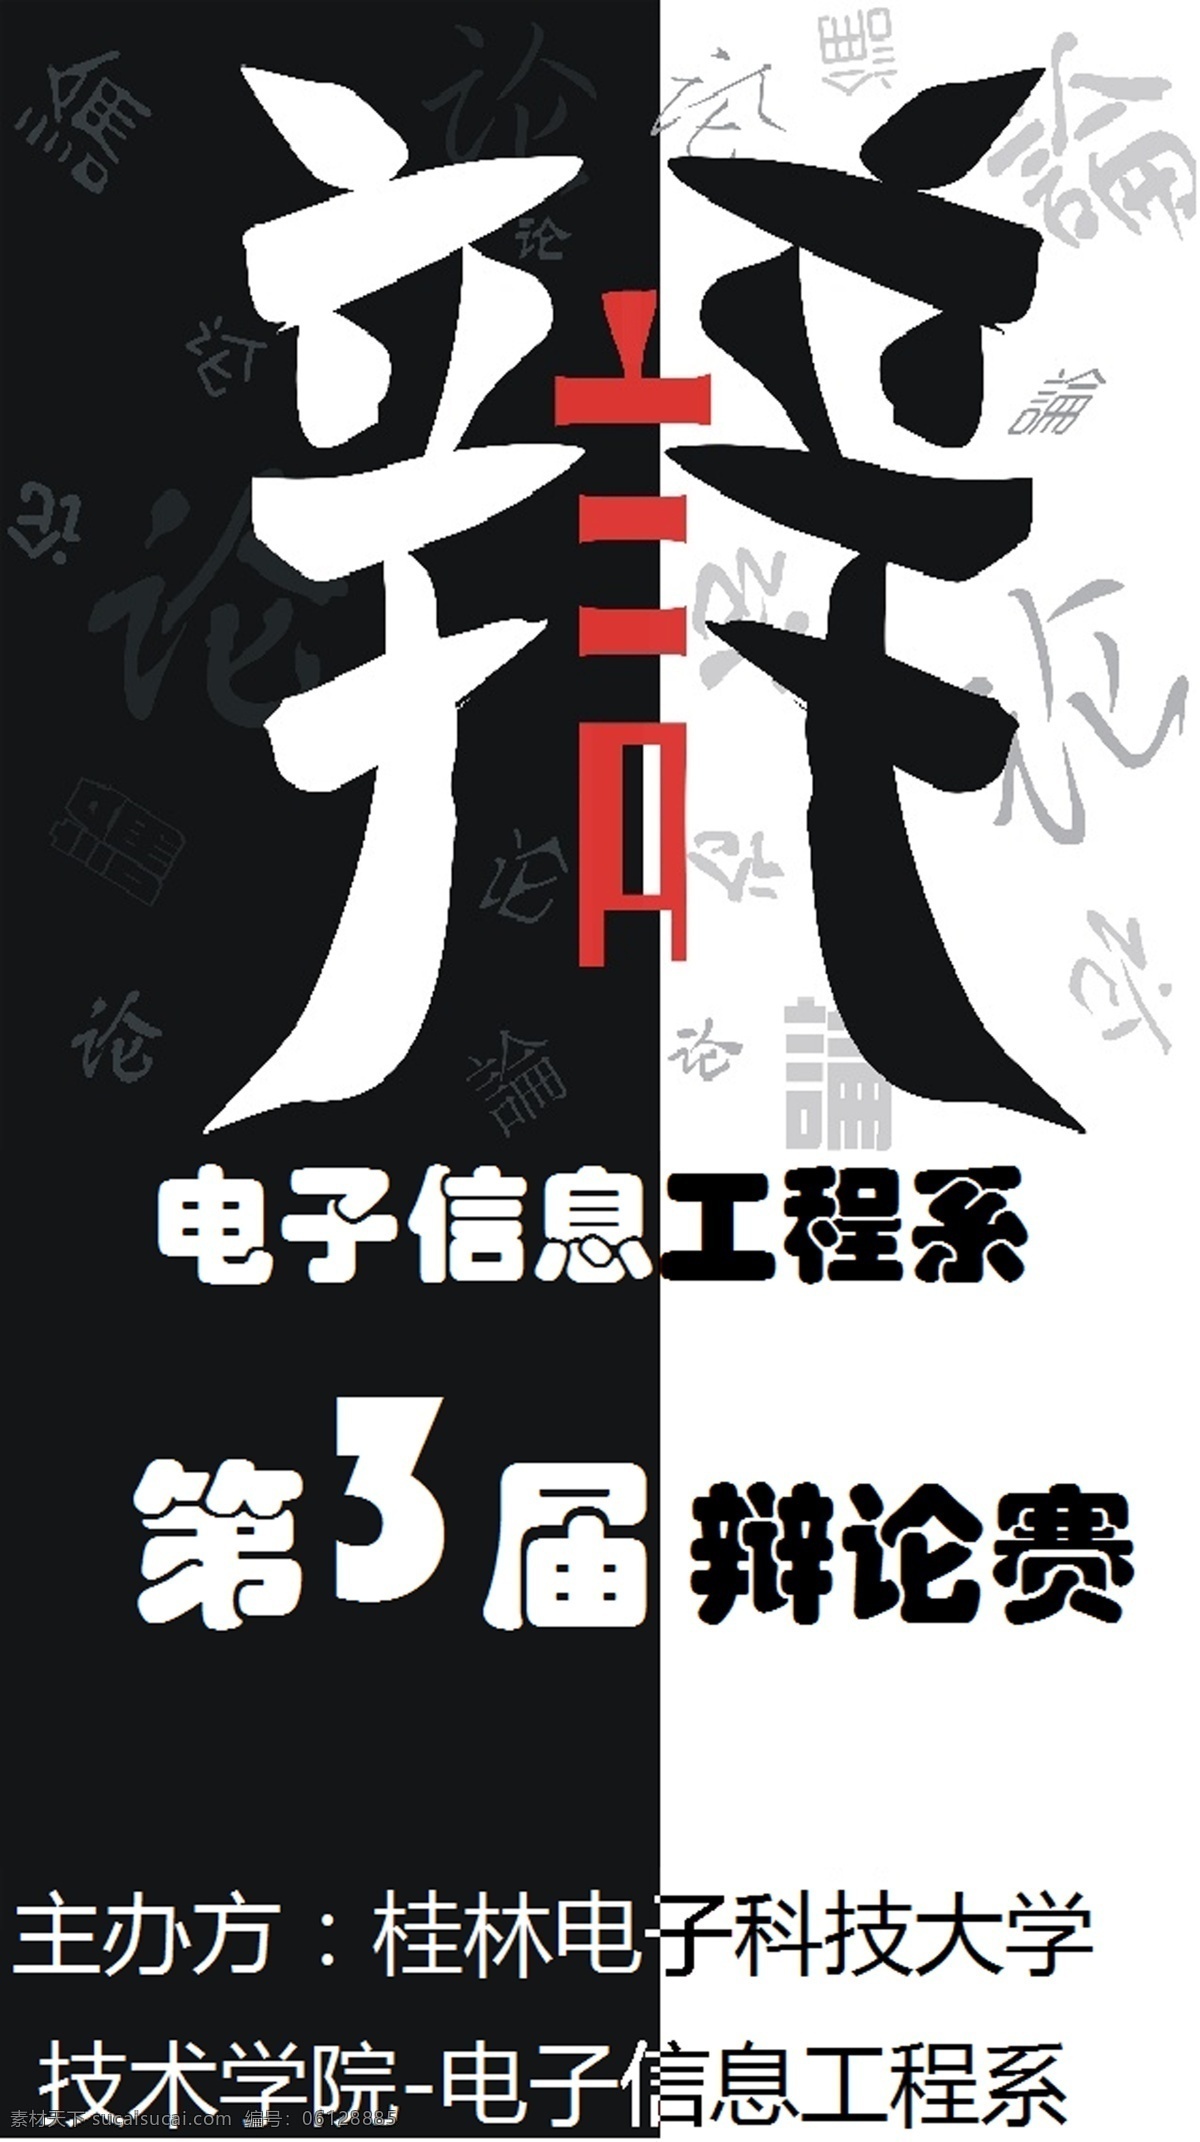 辩论赛海报 辩论赛 海报 桂林 电子 科技 大学 广告设计模板 源文件